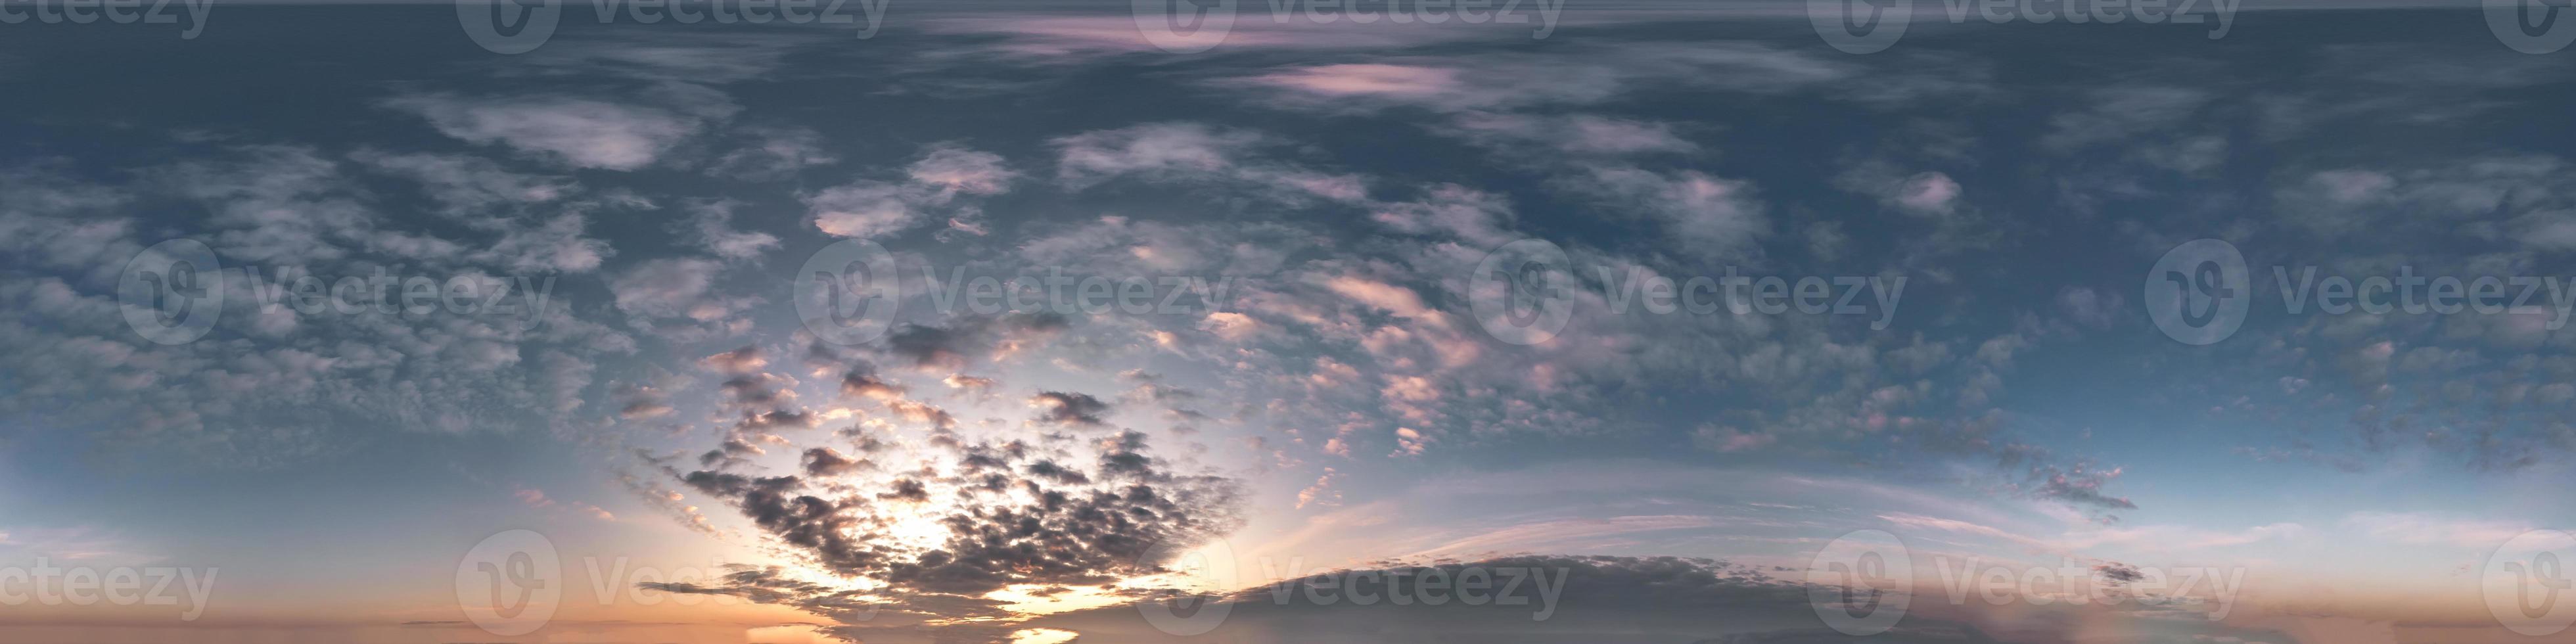 dunkelblauer himmel vor sonnenuntergang mit wunderschönen ehrfürchtigen wolken. nahtloses Hdri-Panorama 360-Grad-Winkelansicht mit Zenit zur Verwendung in 3D-Grafiken oder Spieleentwicklung als Himmelskuppel oder Drohnenaufnahme bearbeiten foto